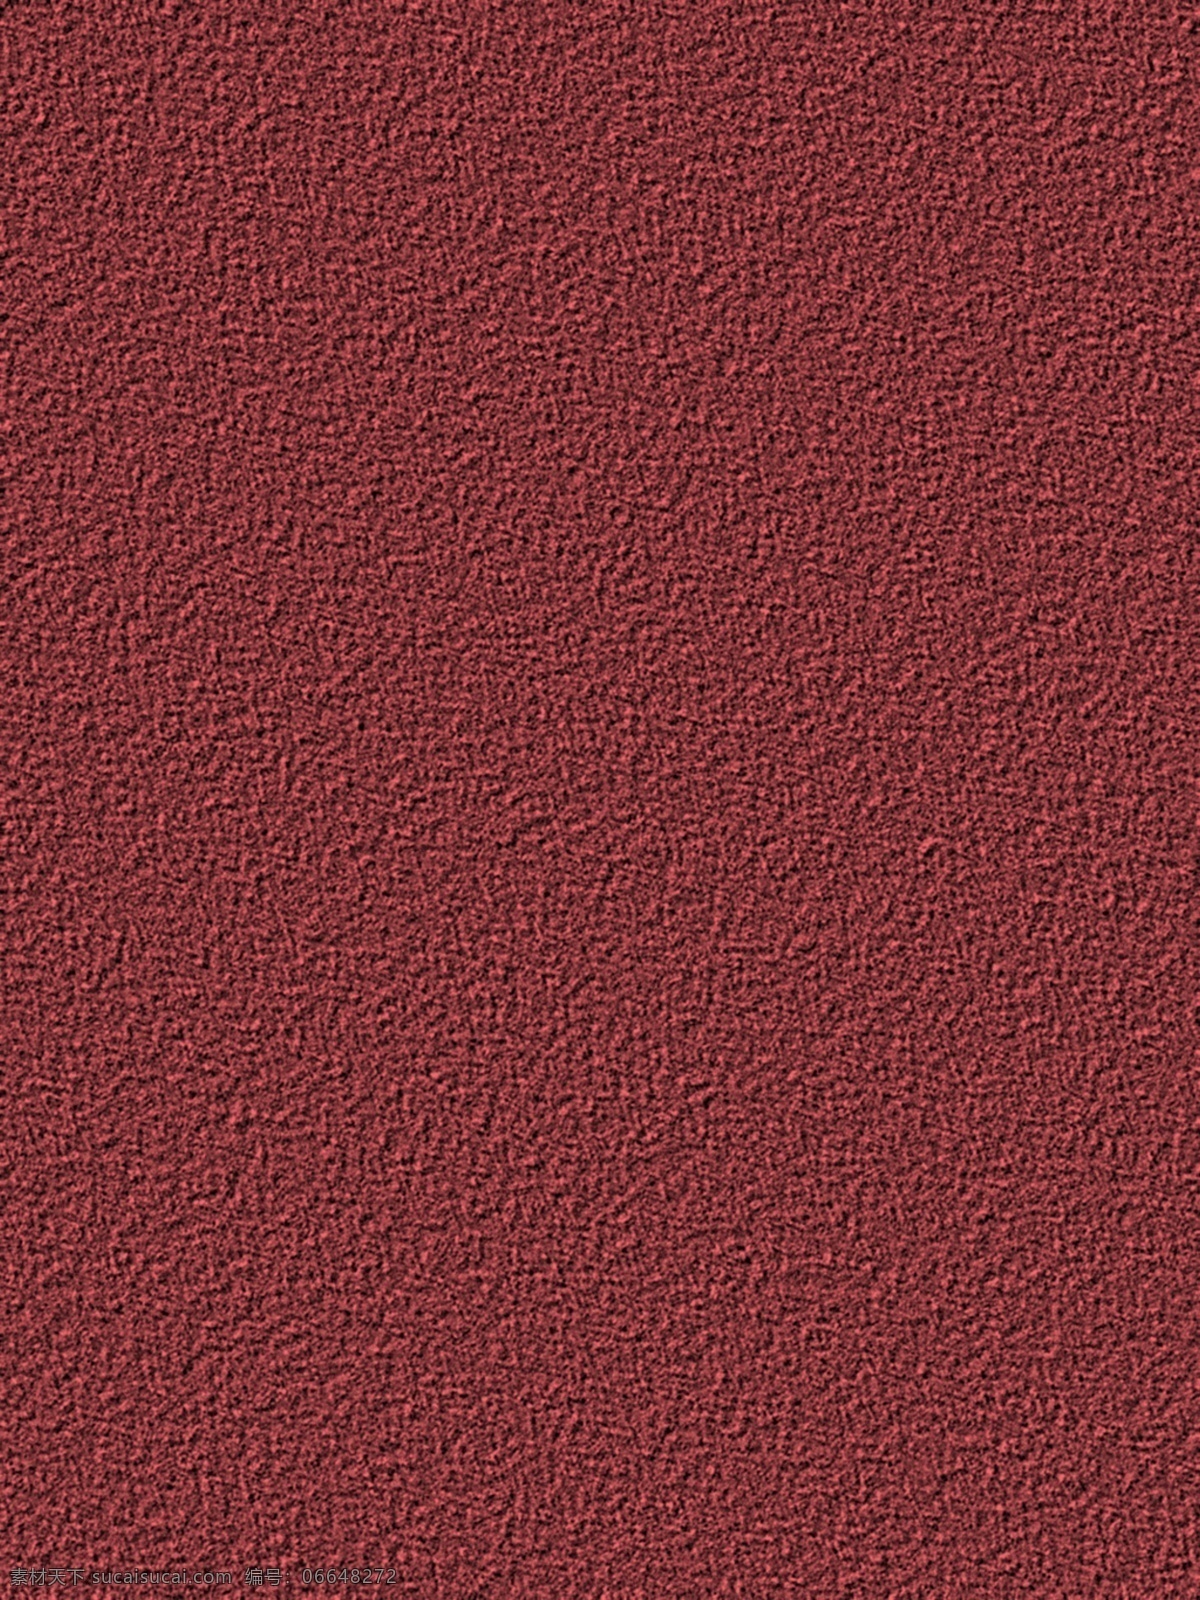 原创 红色 质感 磨砂 背景 质感背景 简约背景 纯色 简单 红色质感背景